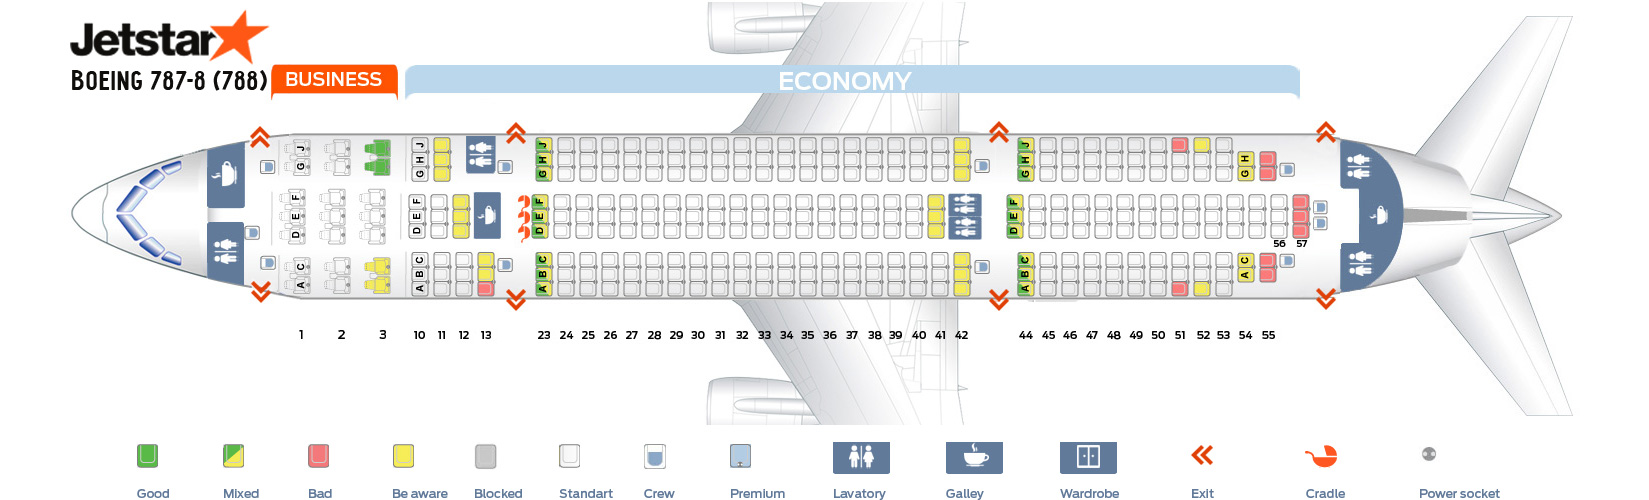 Seat map Boeing 7878 Dreamliner Jetstar. Best seats in